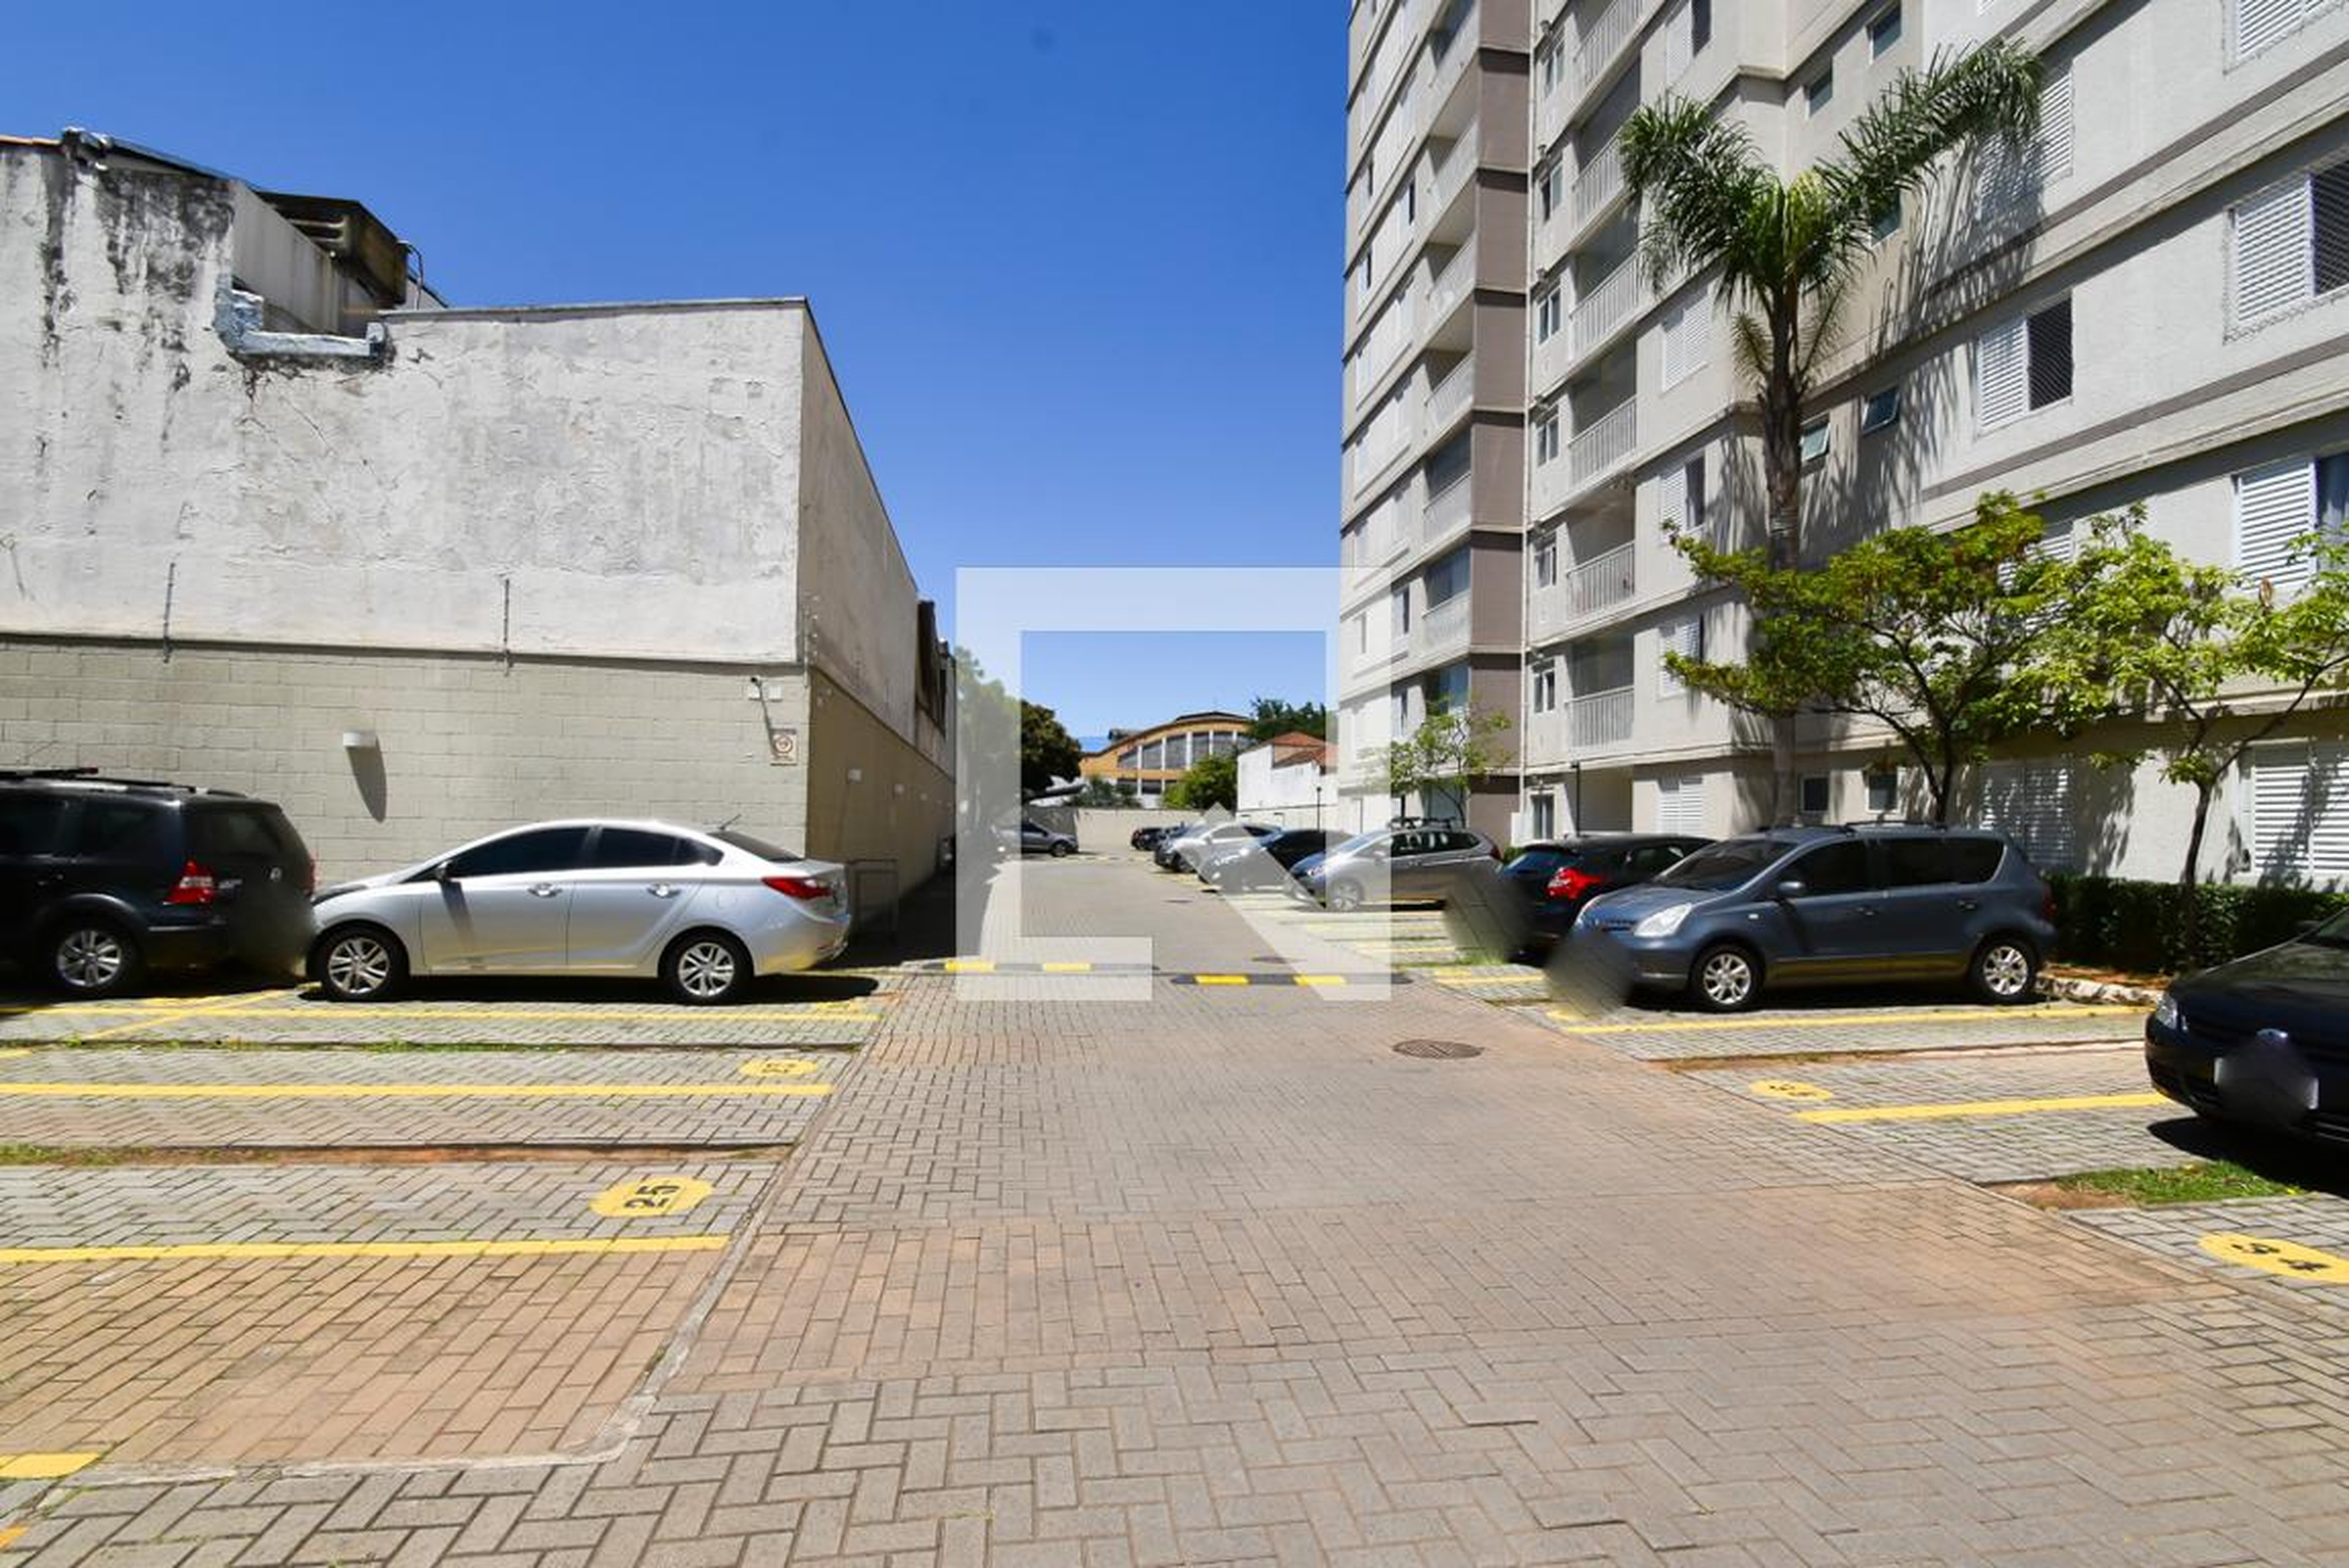 Estacionamento - Shop Club Vila Guilherme